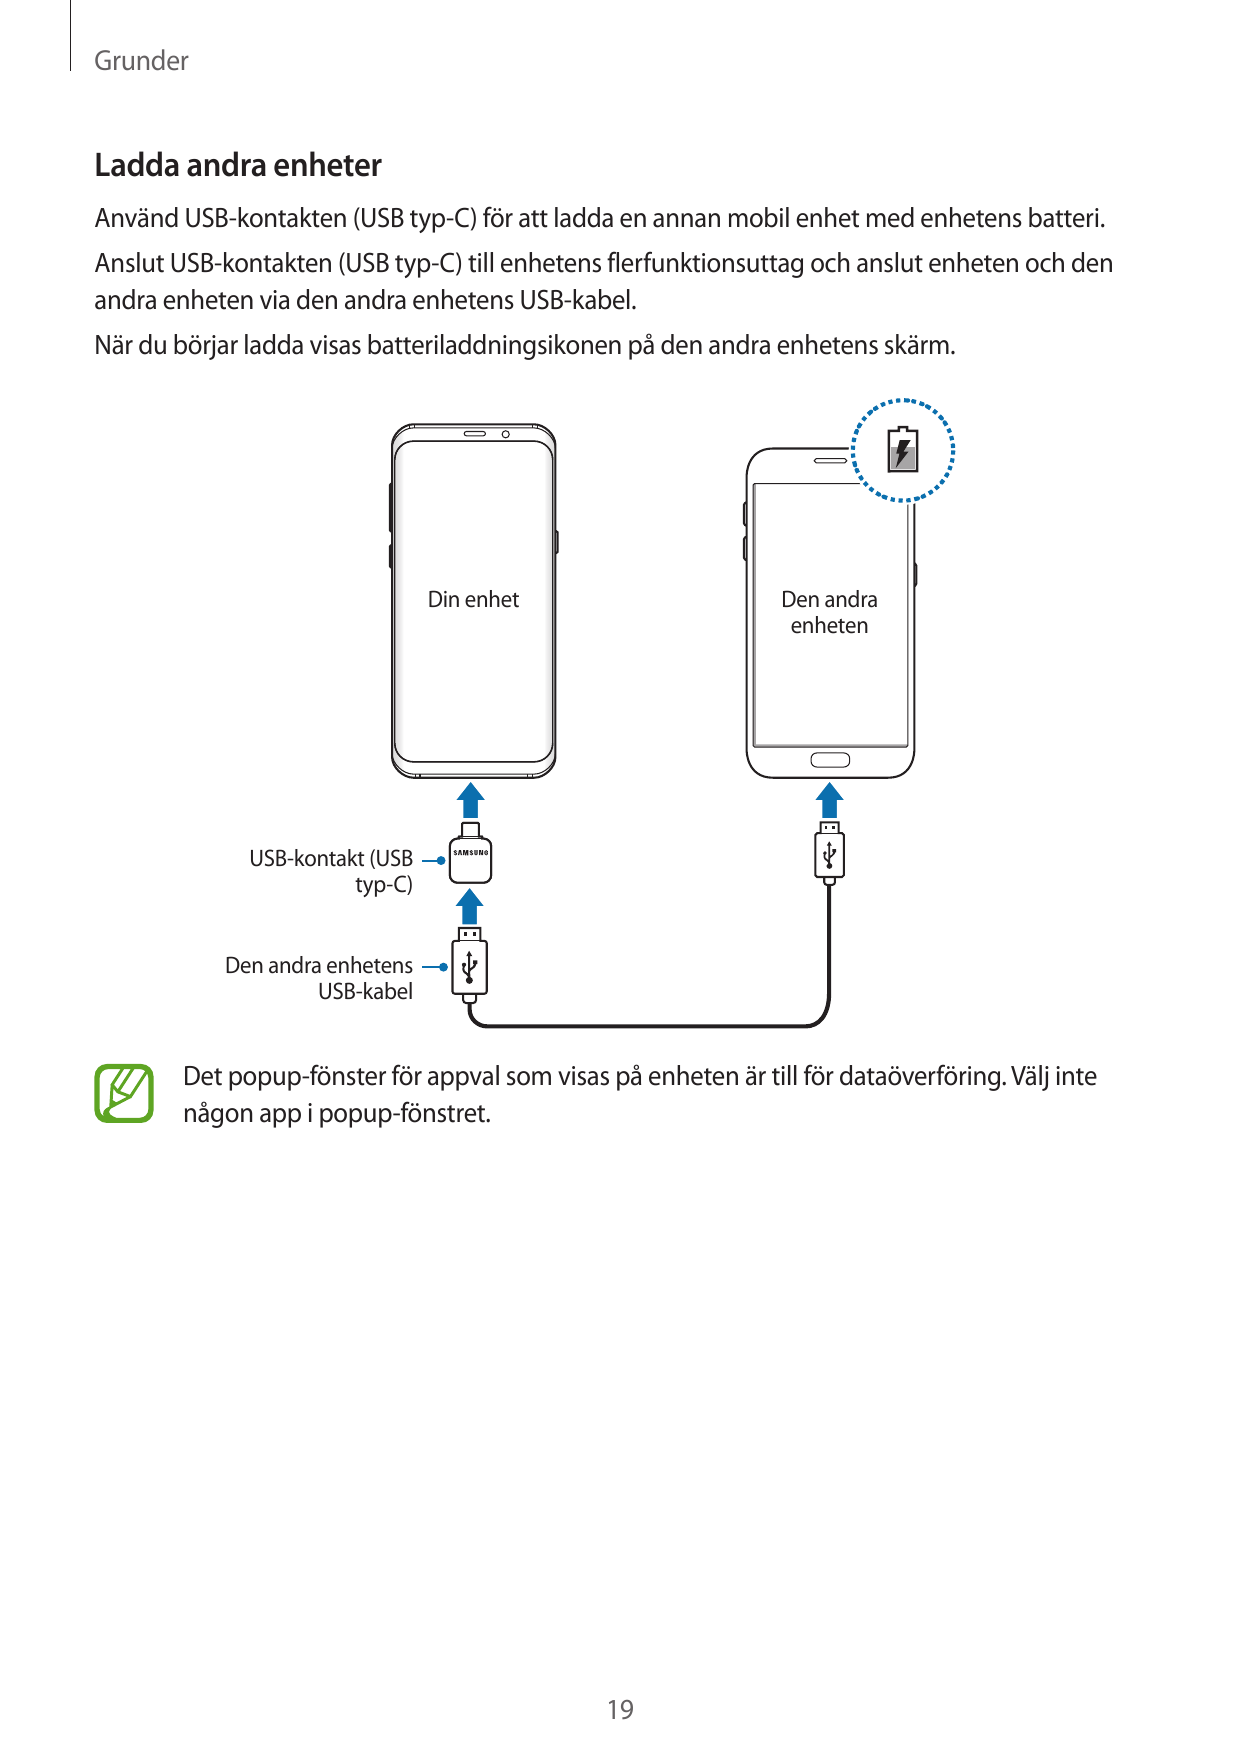 GrunderLadda andra enheterAnvänd USB-kontakten (USB typ-C) för att ladda en annan mobil enhet med enhetens batteri.Anslut USB-ko